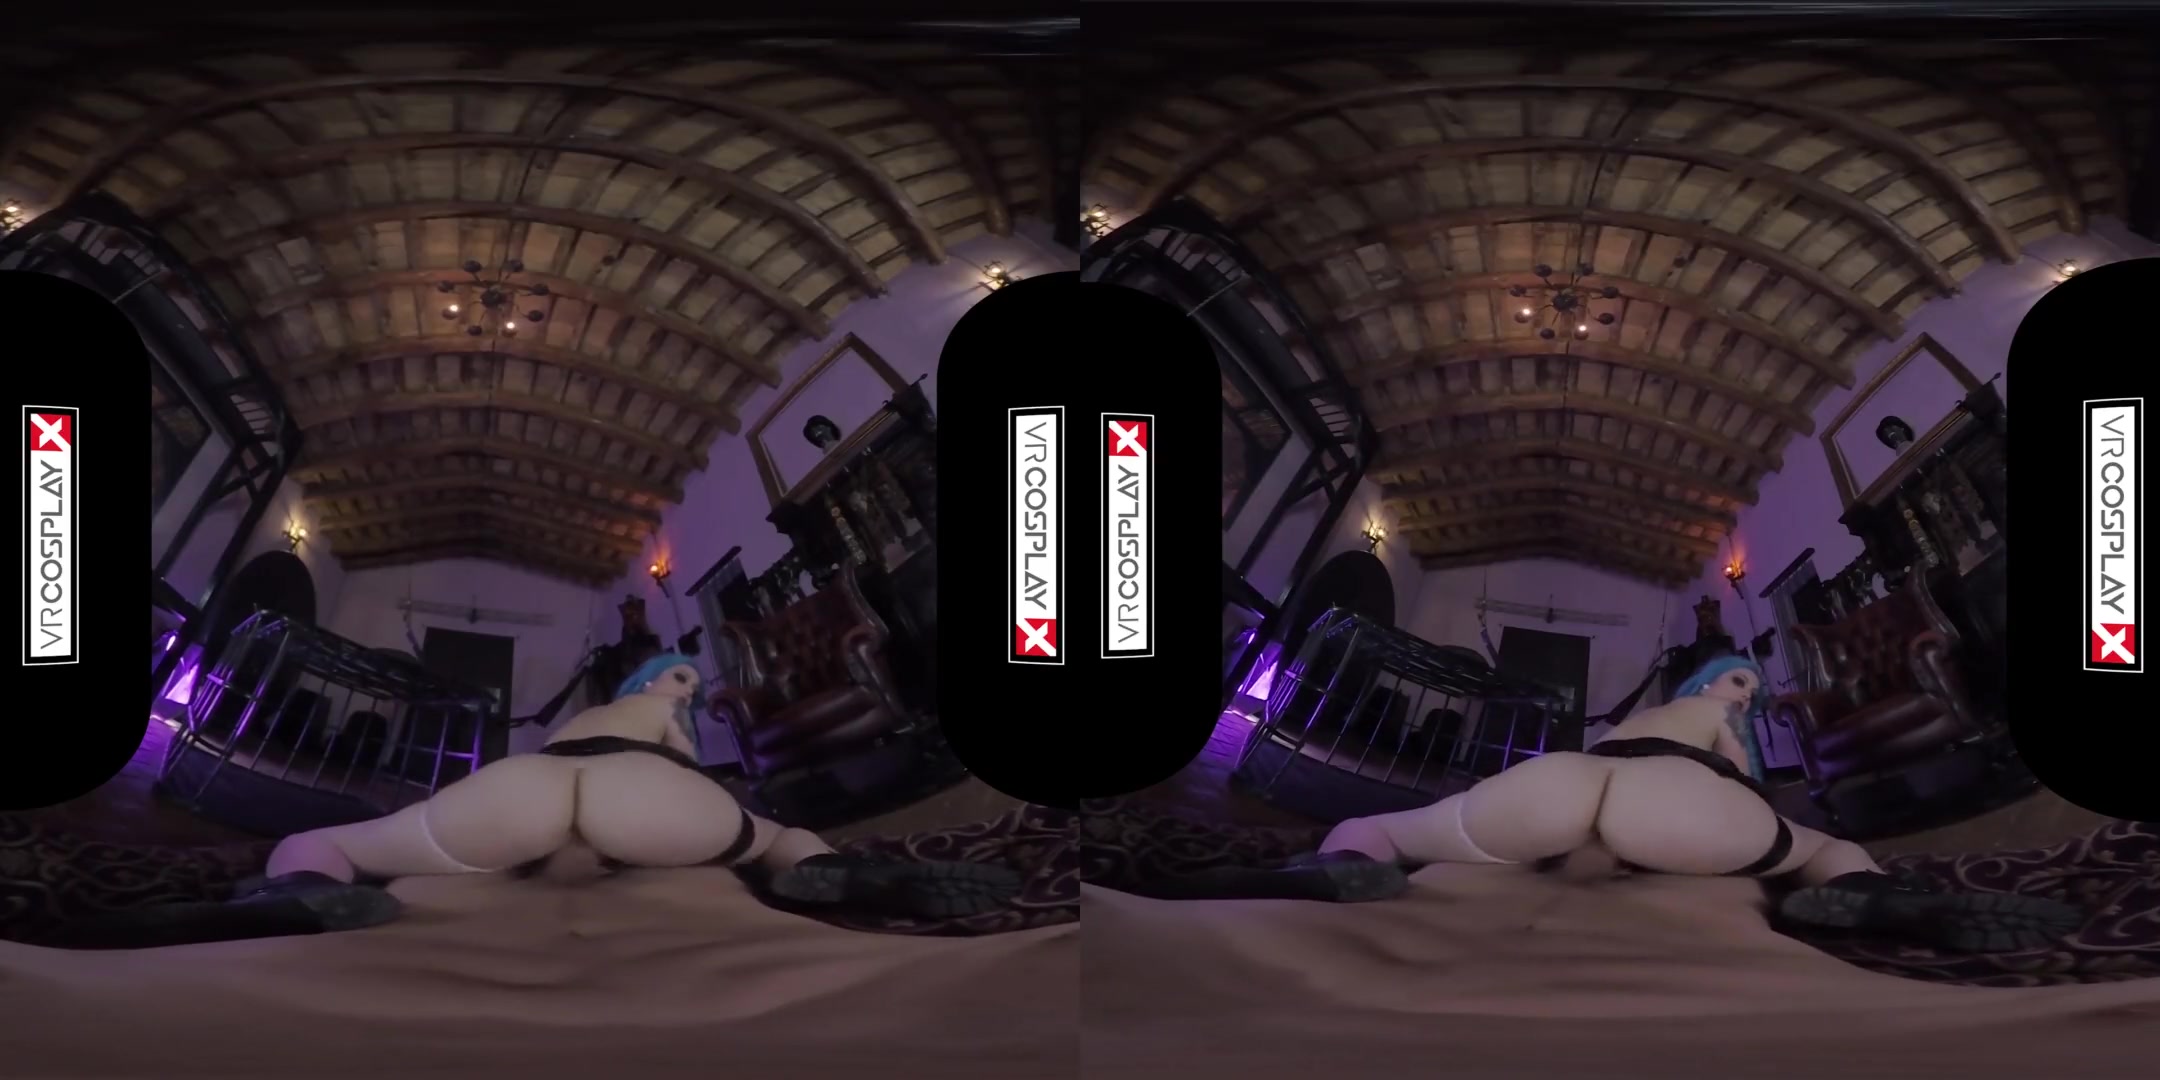 Порно Виртуальной Реальности 360 Градусов